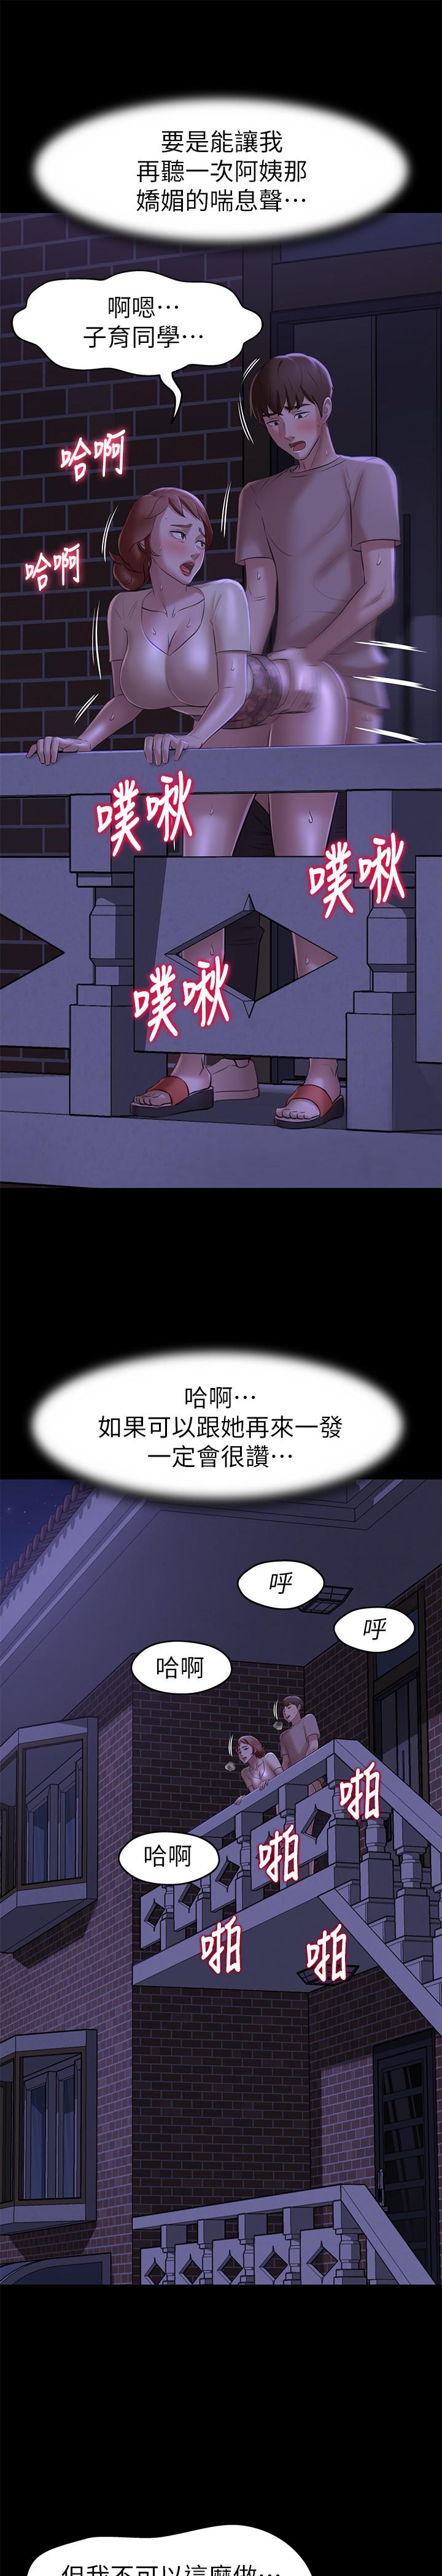 《小裤裤笔记》漫画 第16话 - 傲慢的国小同学张穗桦